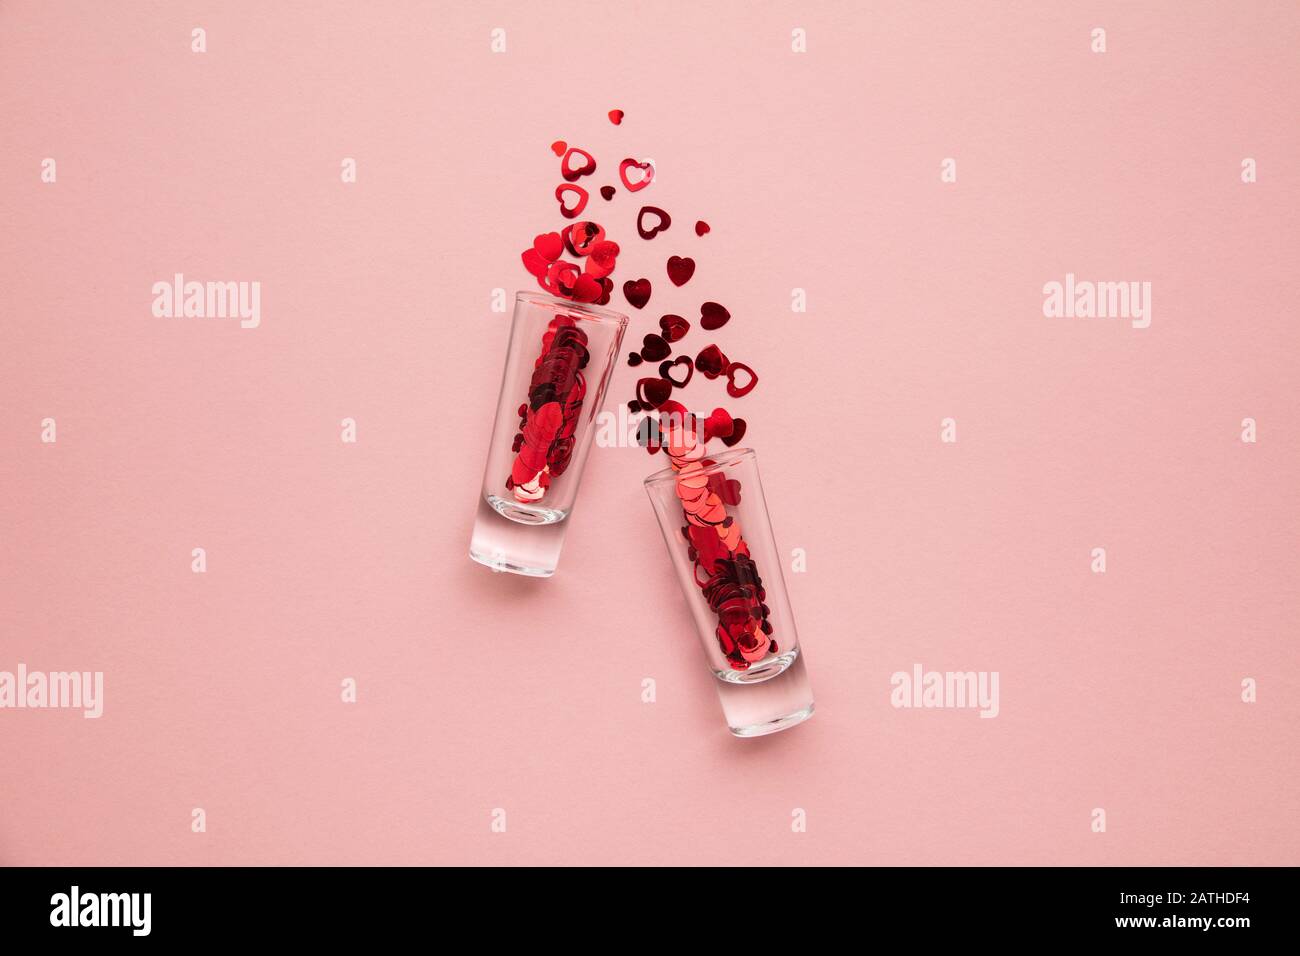 Valentinstagsaufnahmen. Glas mit Herzkonfetti auf pastellrosa Hintergrund Stockfoto